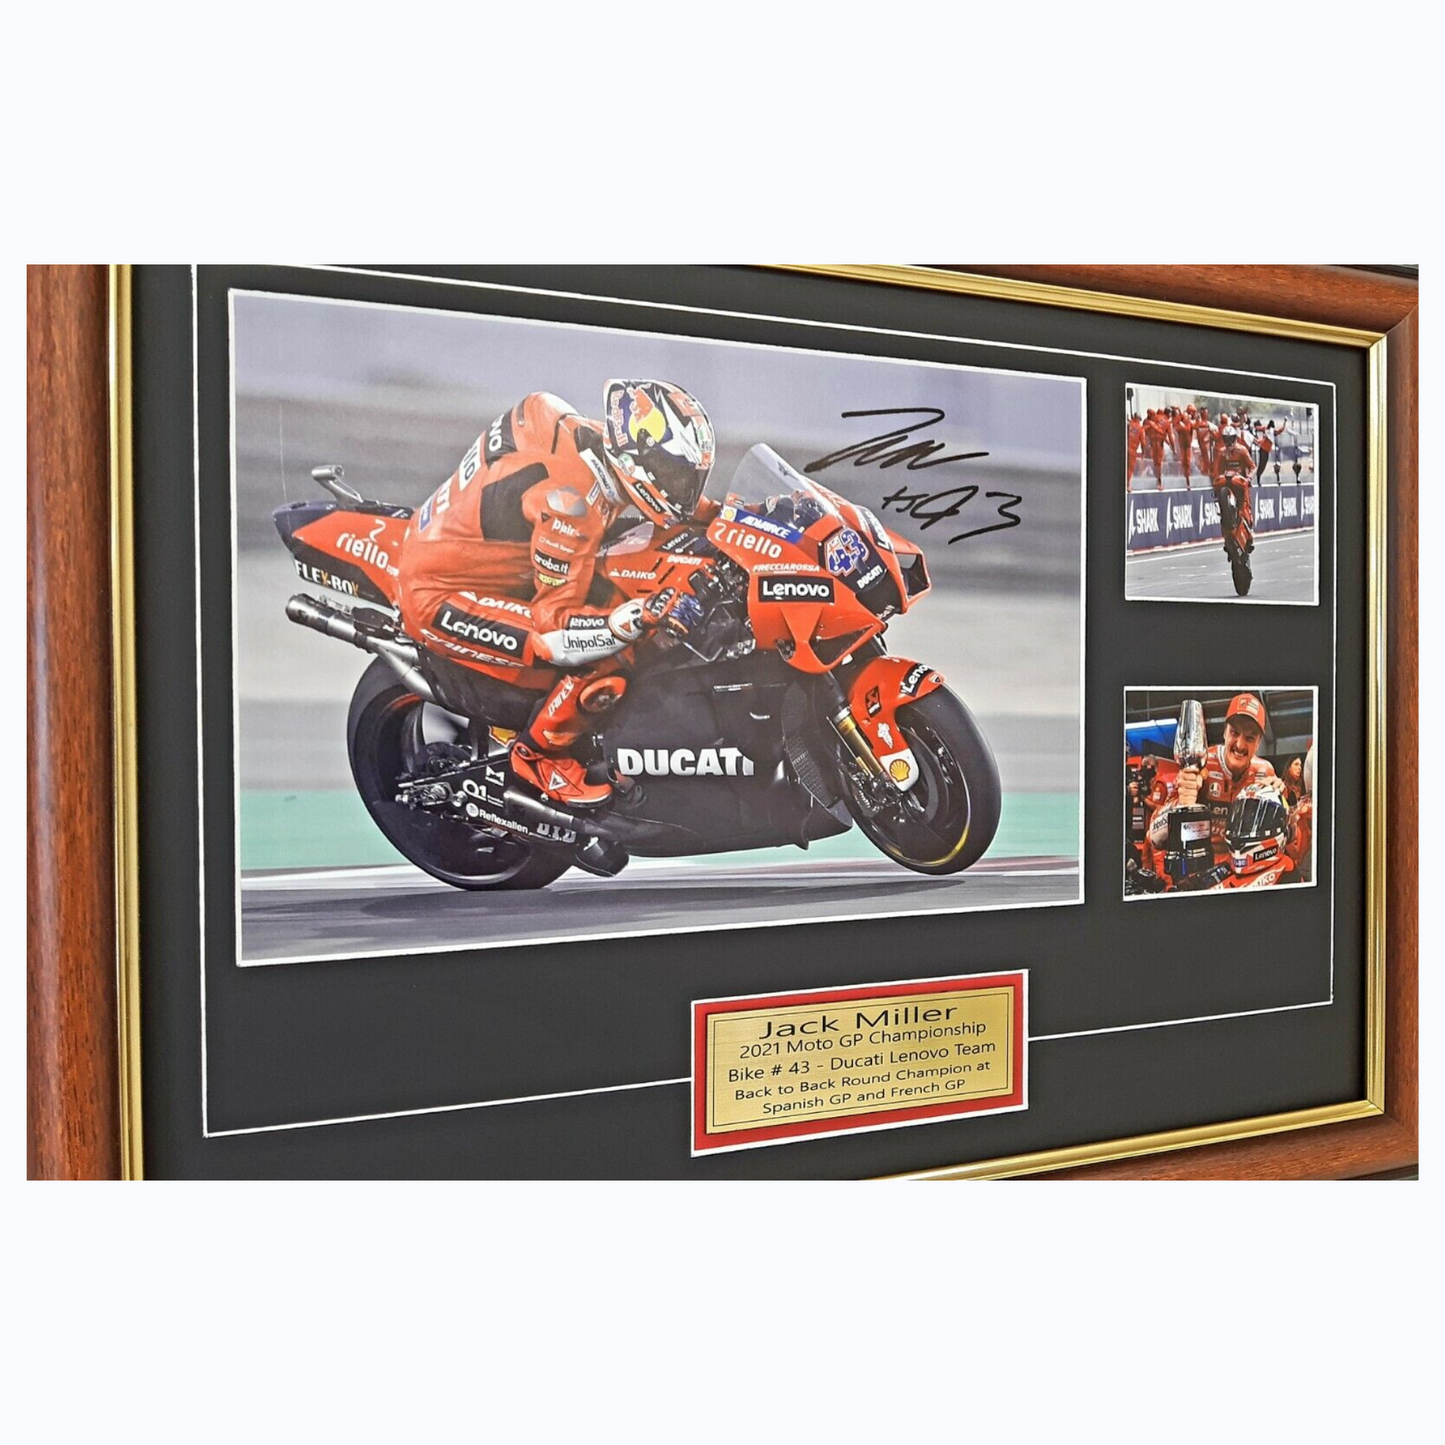 Jack Miller 2021 Moto GP Signed Framed Memorabilia Bike 43